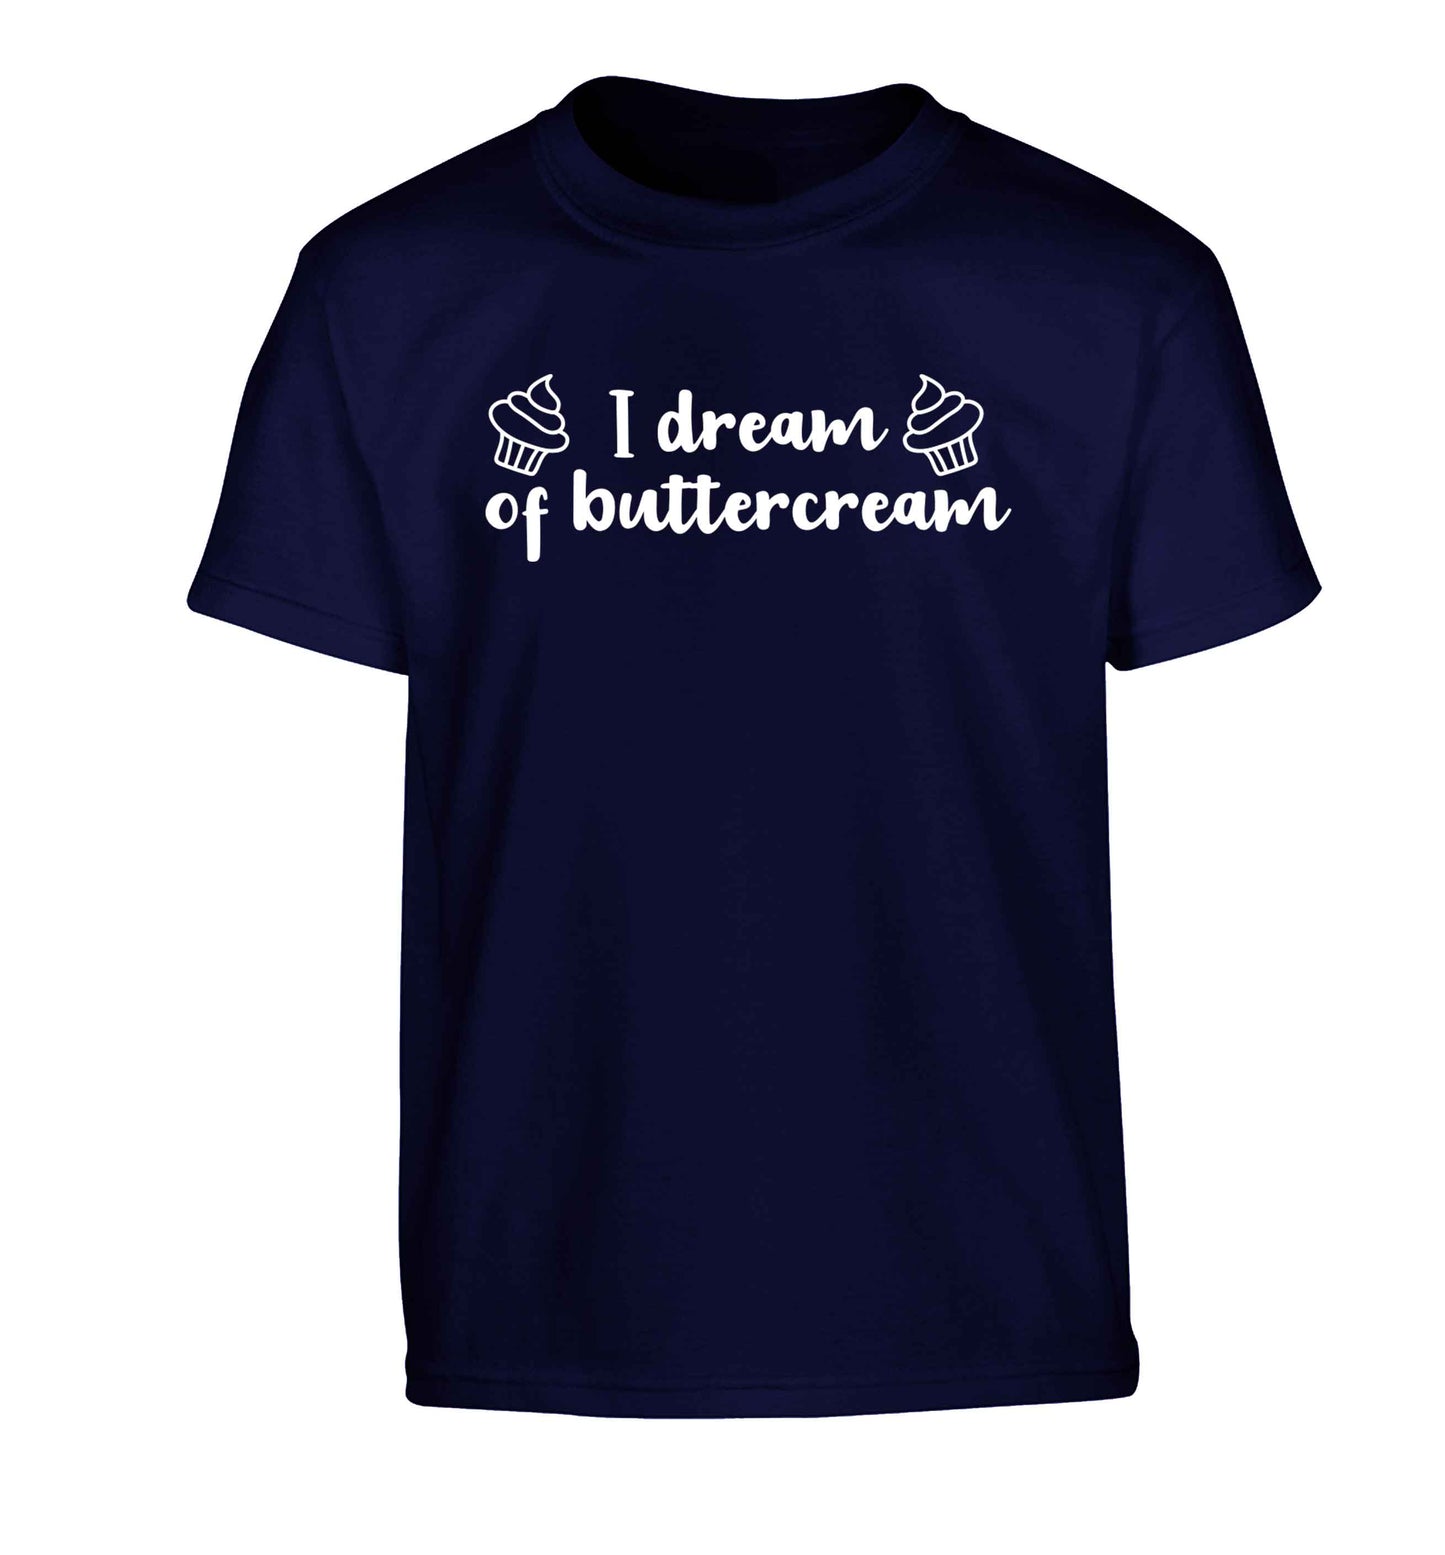 I dream of buttercream Children's navy Tshirt 12-13 Years